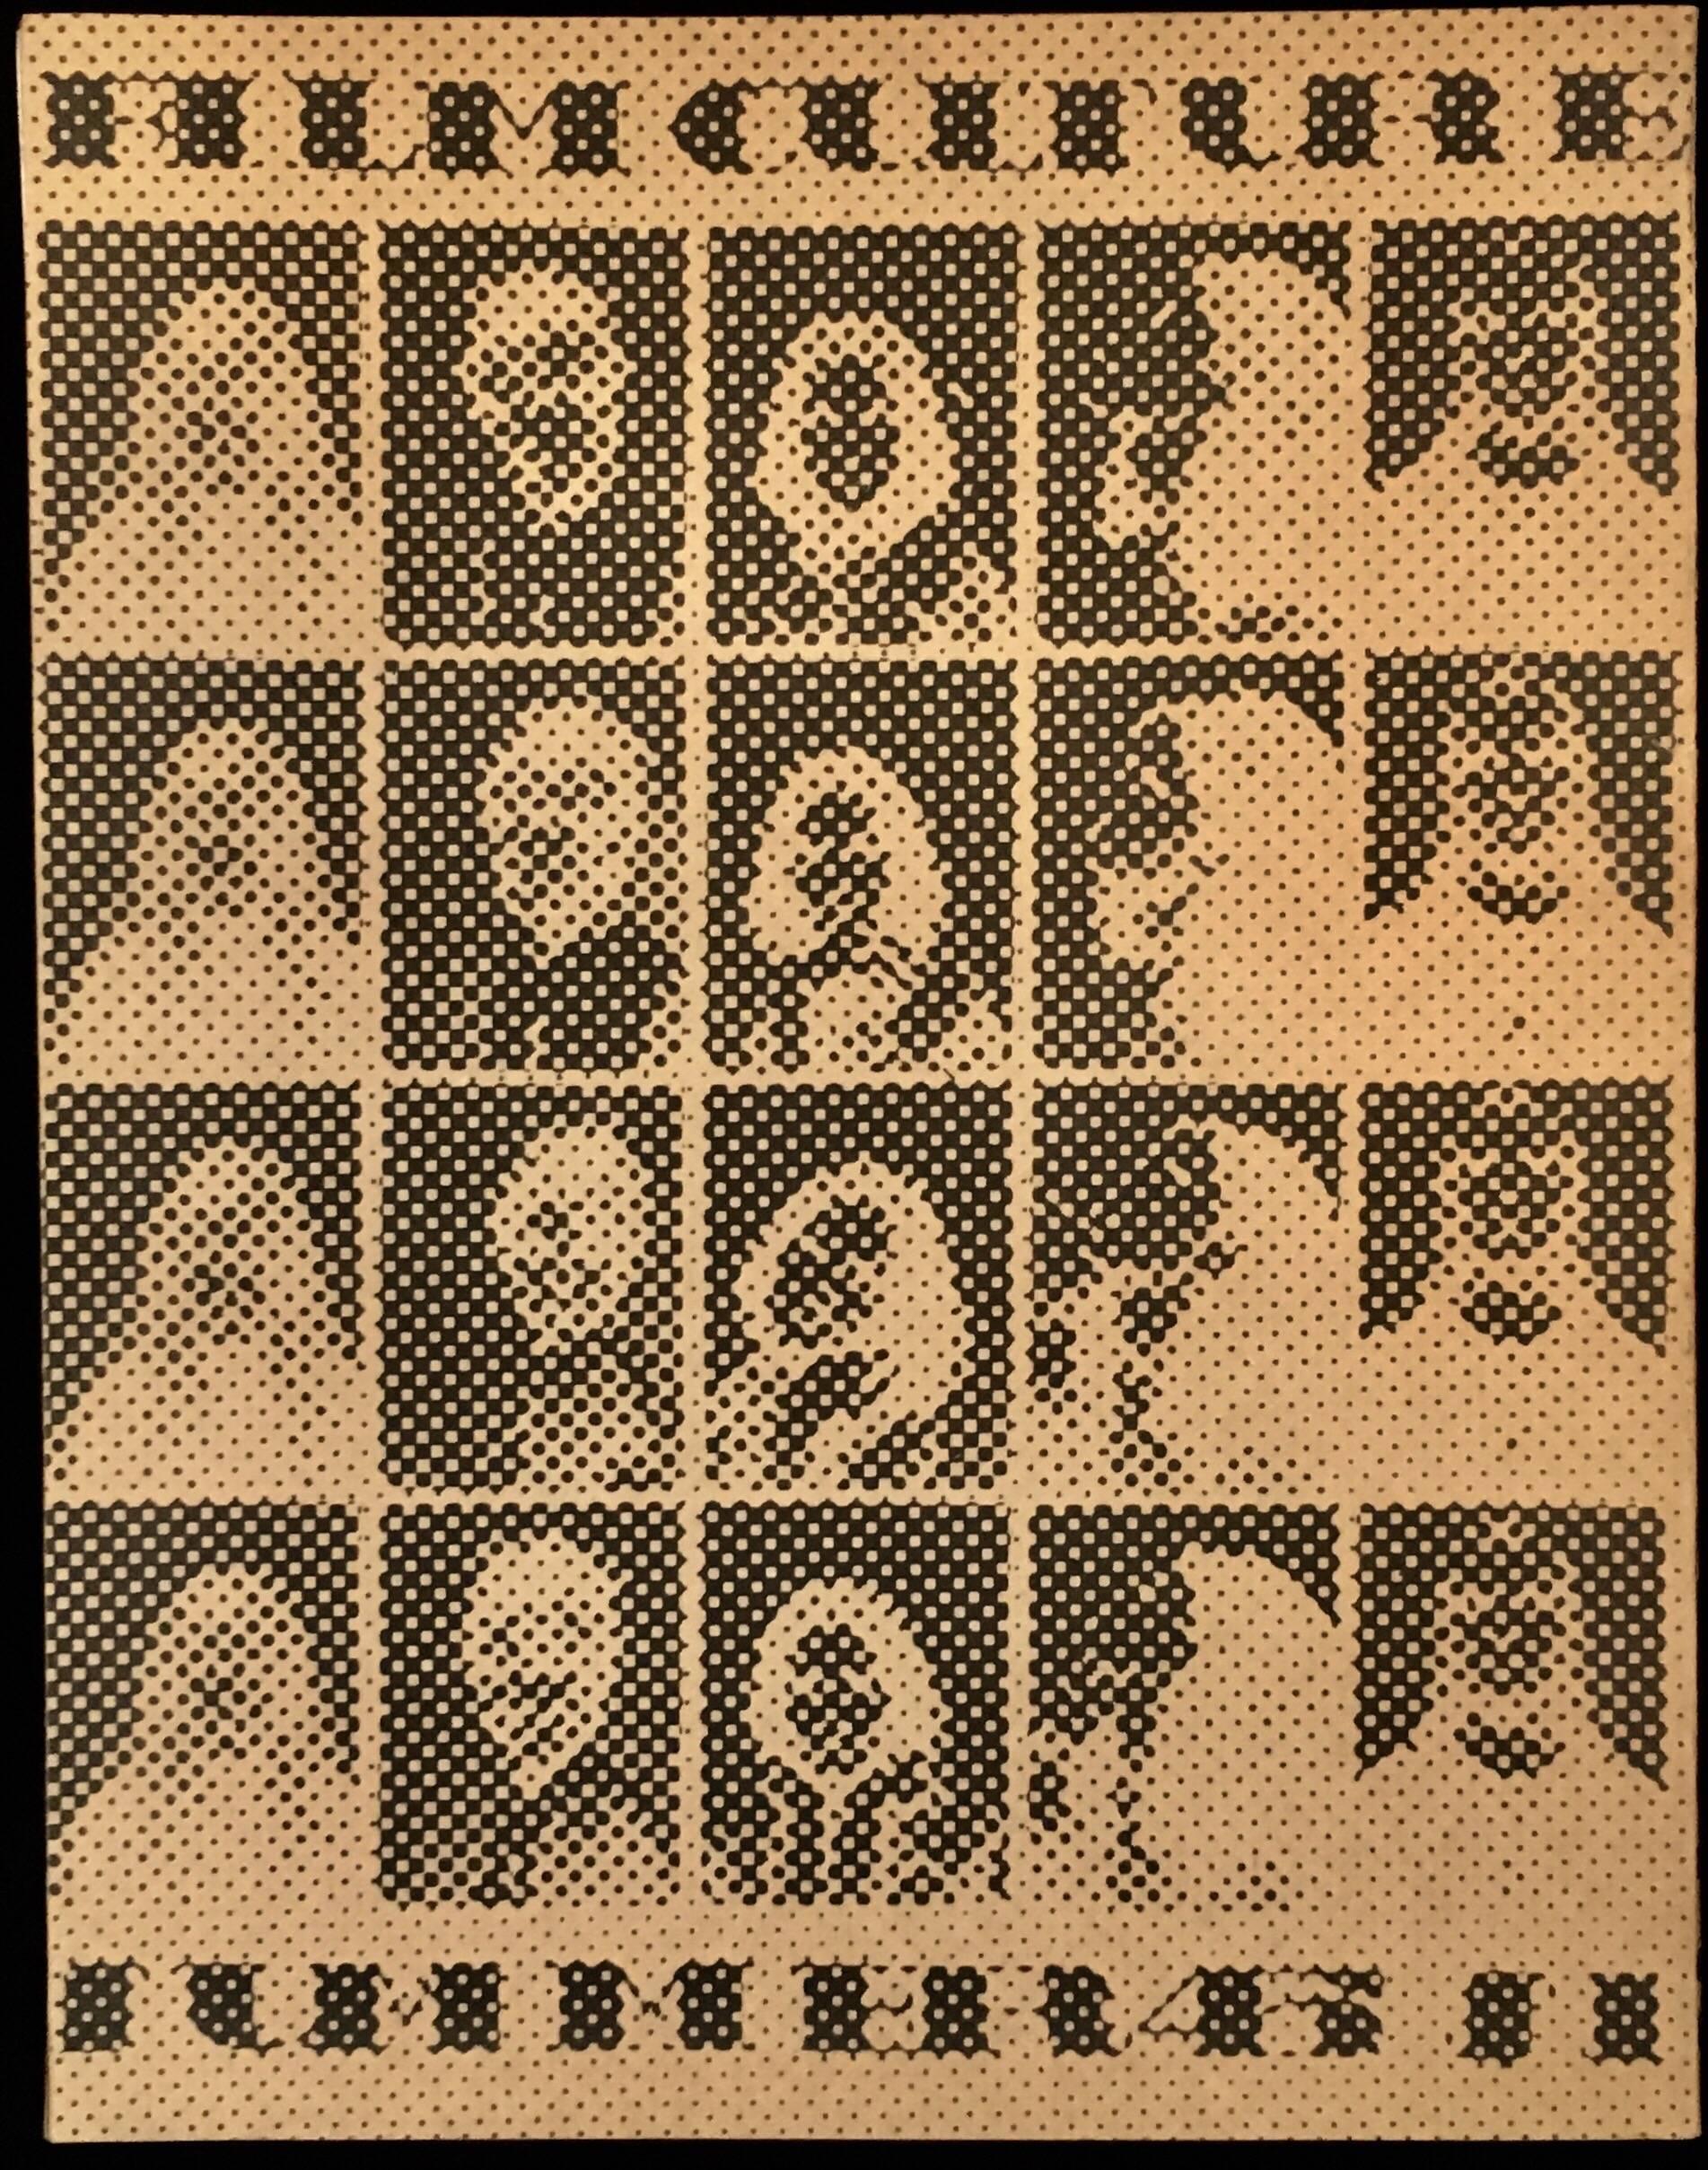 Andy Warhol 1967 :
Magazine Film Culture, 1967, dont la couverture a été réalisée par Andy Warhol. Warhol a conçu la couverture en utilisant des portraits pris dans un photomaton pour la couverture et les pages intérieures. Présente des images